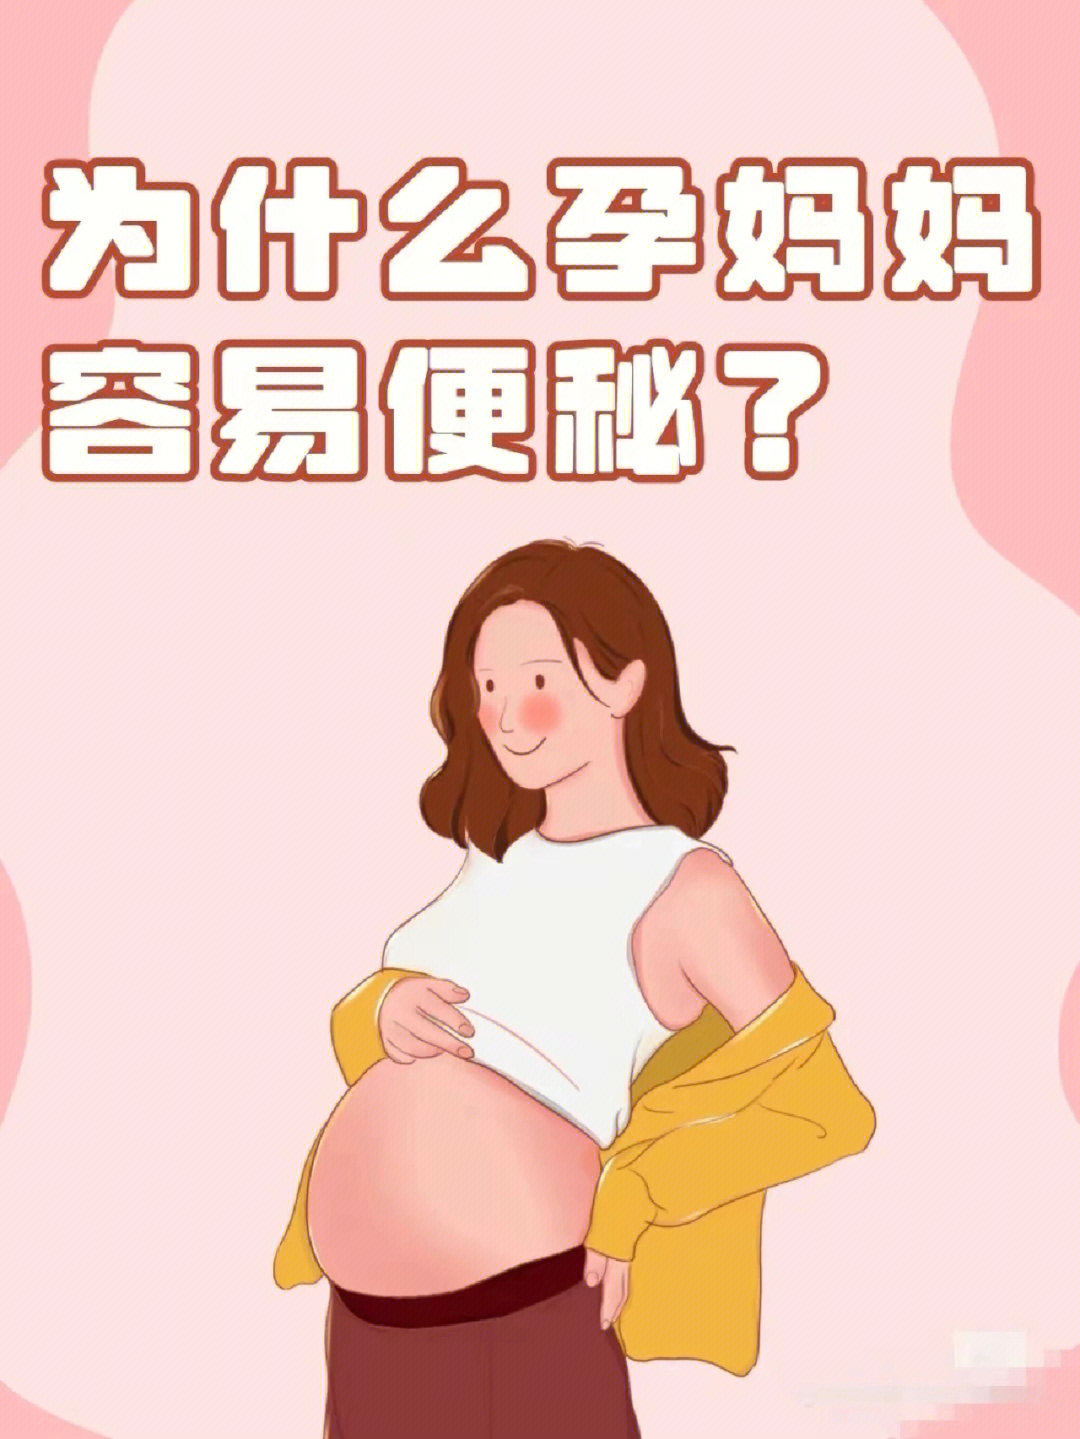 97 【怀孕期间黄体素分泌增加,使胃肠道平滑肌松弛,蠕动减缓,导致